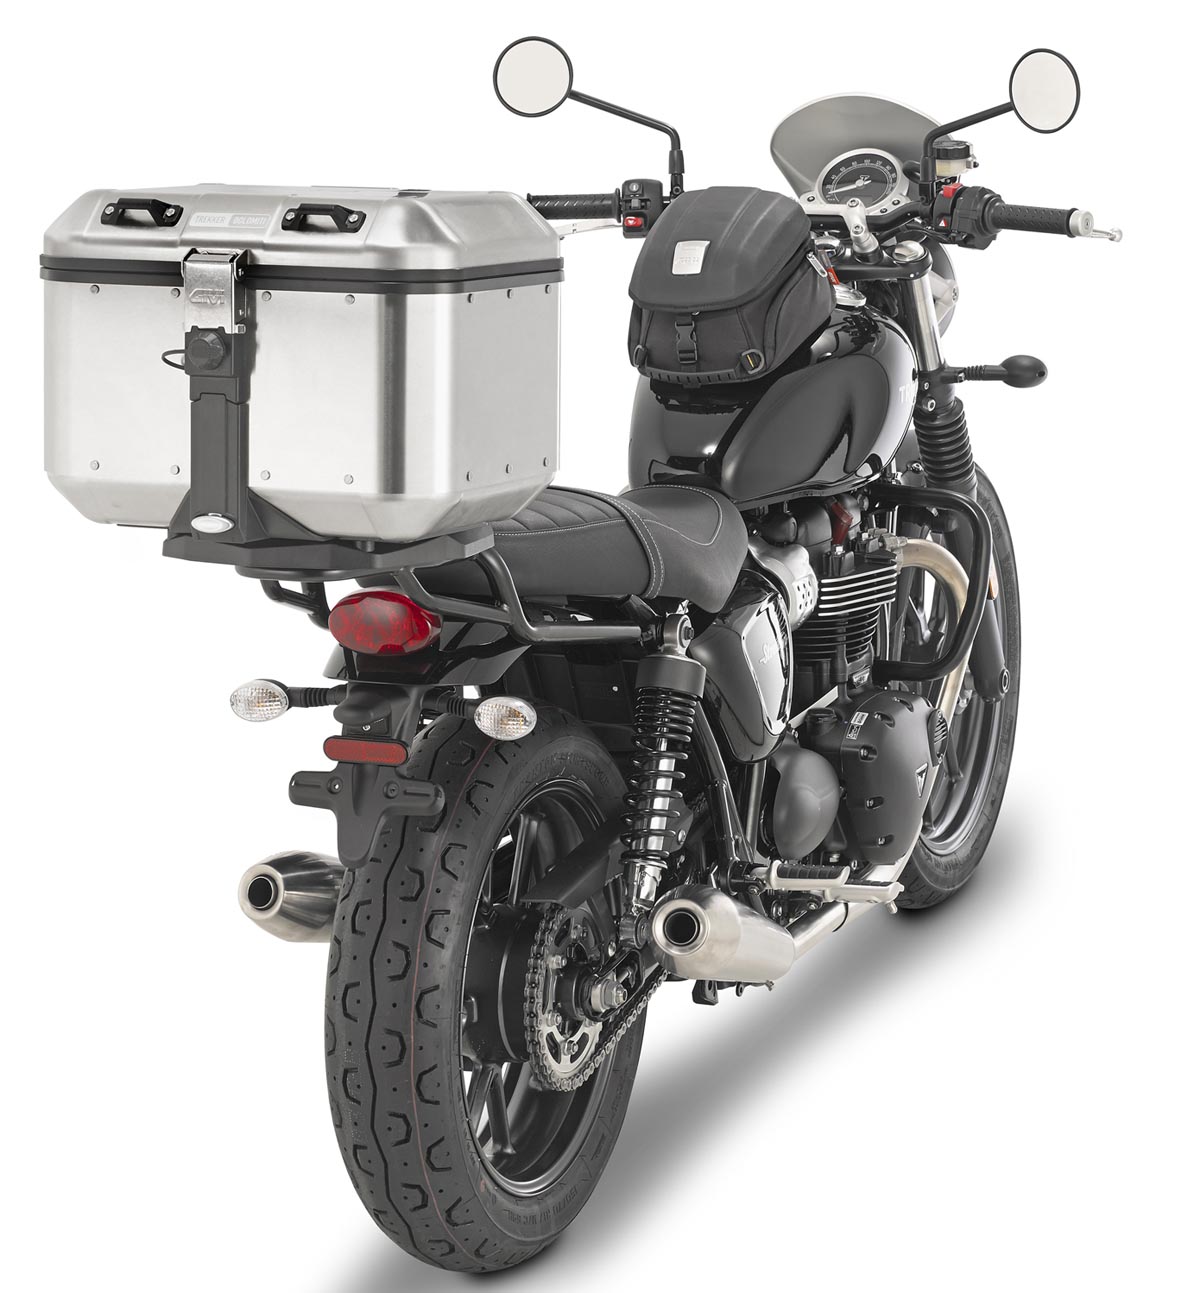 2022新作モデル GIVI ジビ バイク用 リアボックス 46L ブラック モノキーケース アルミ製 TREKKER DOLOMITI DLM46B  98635